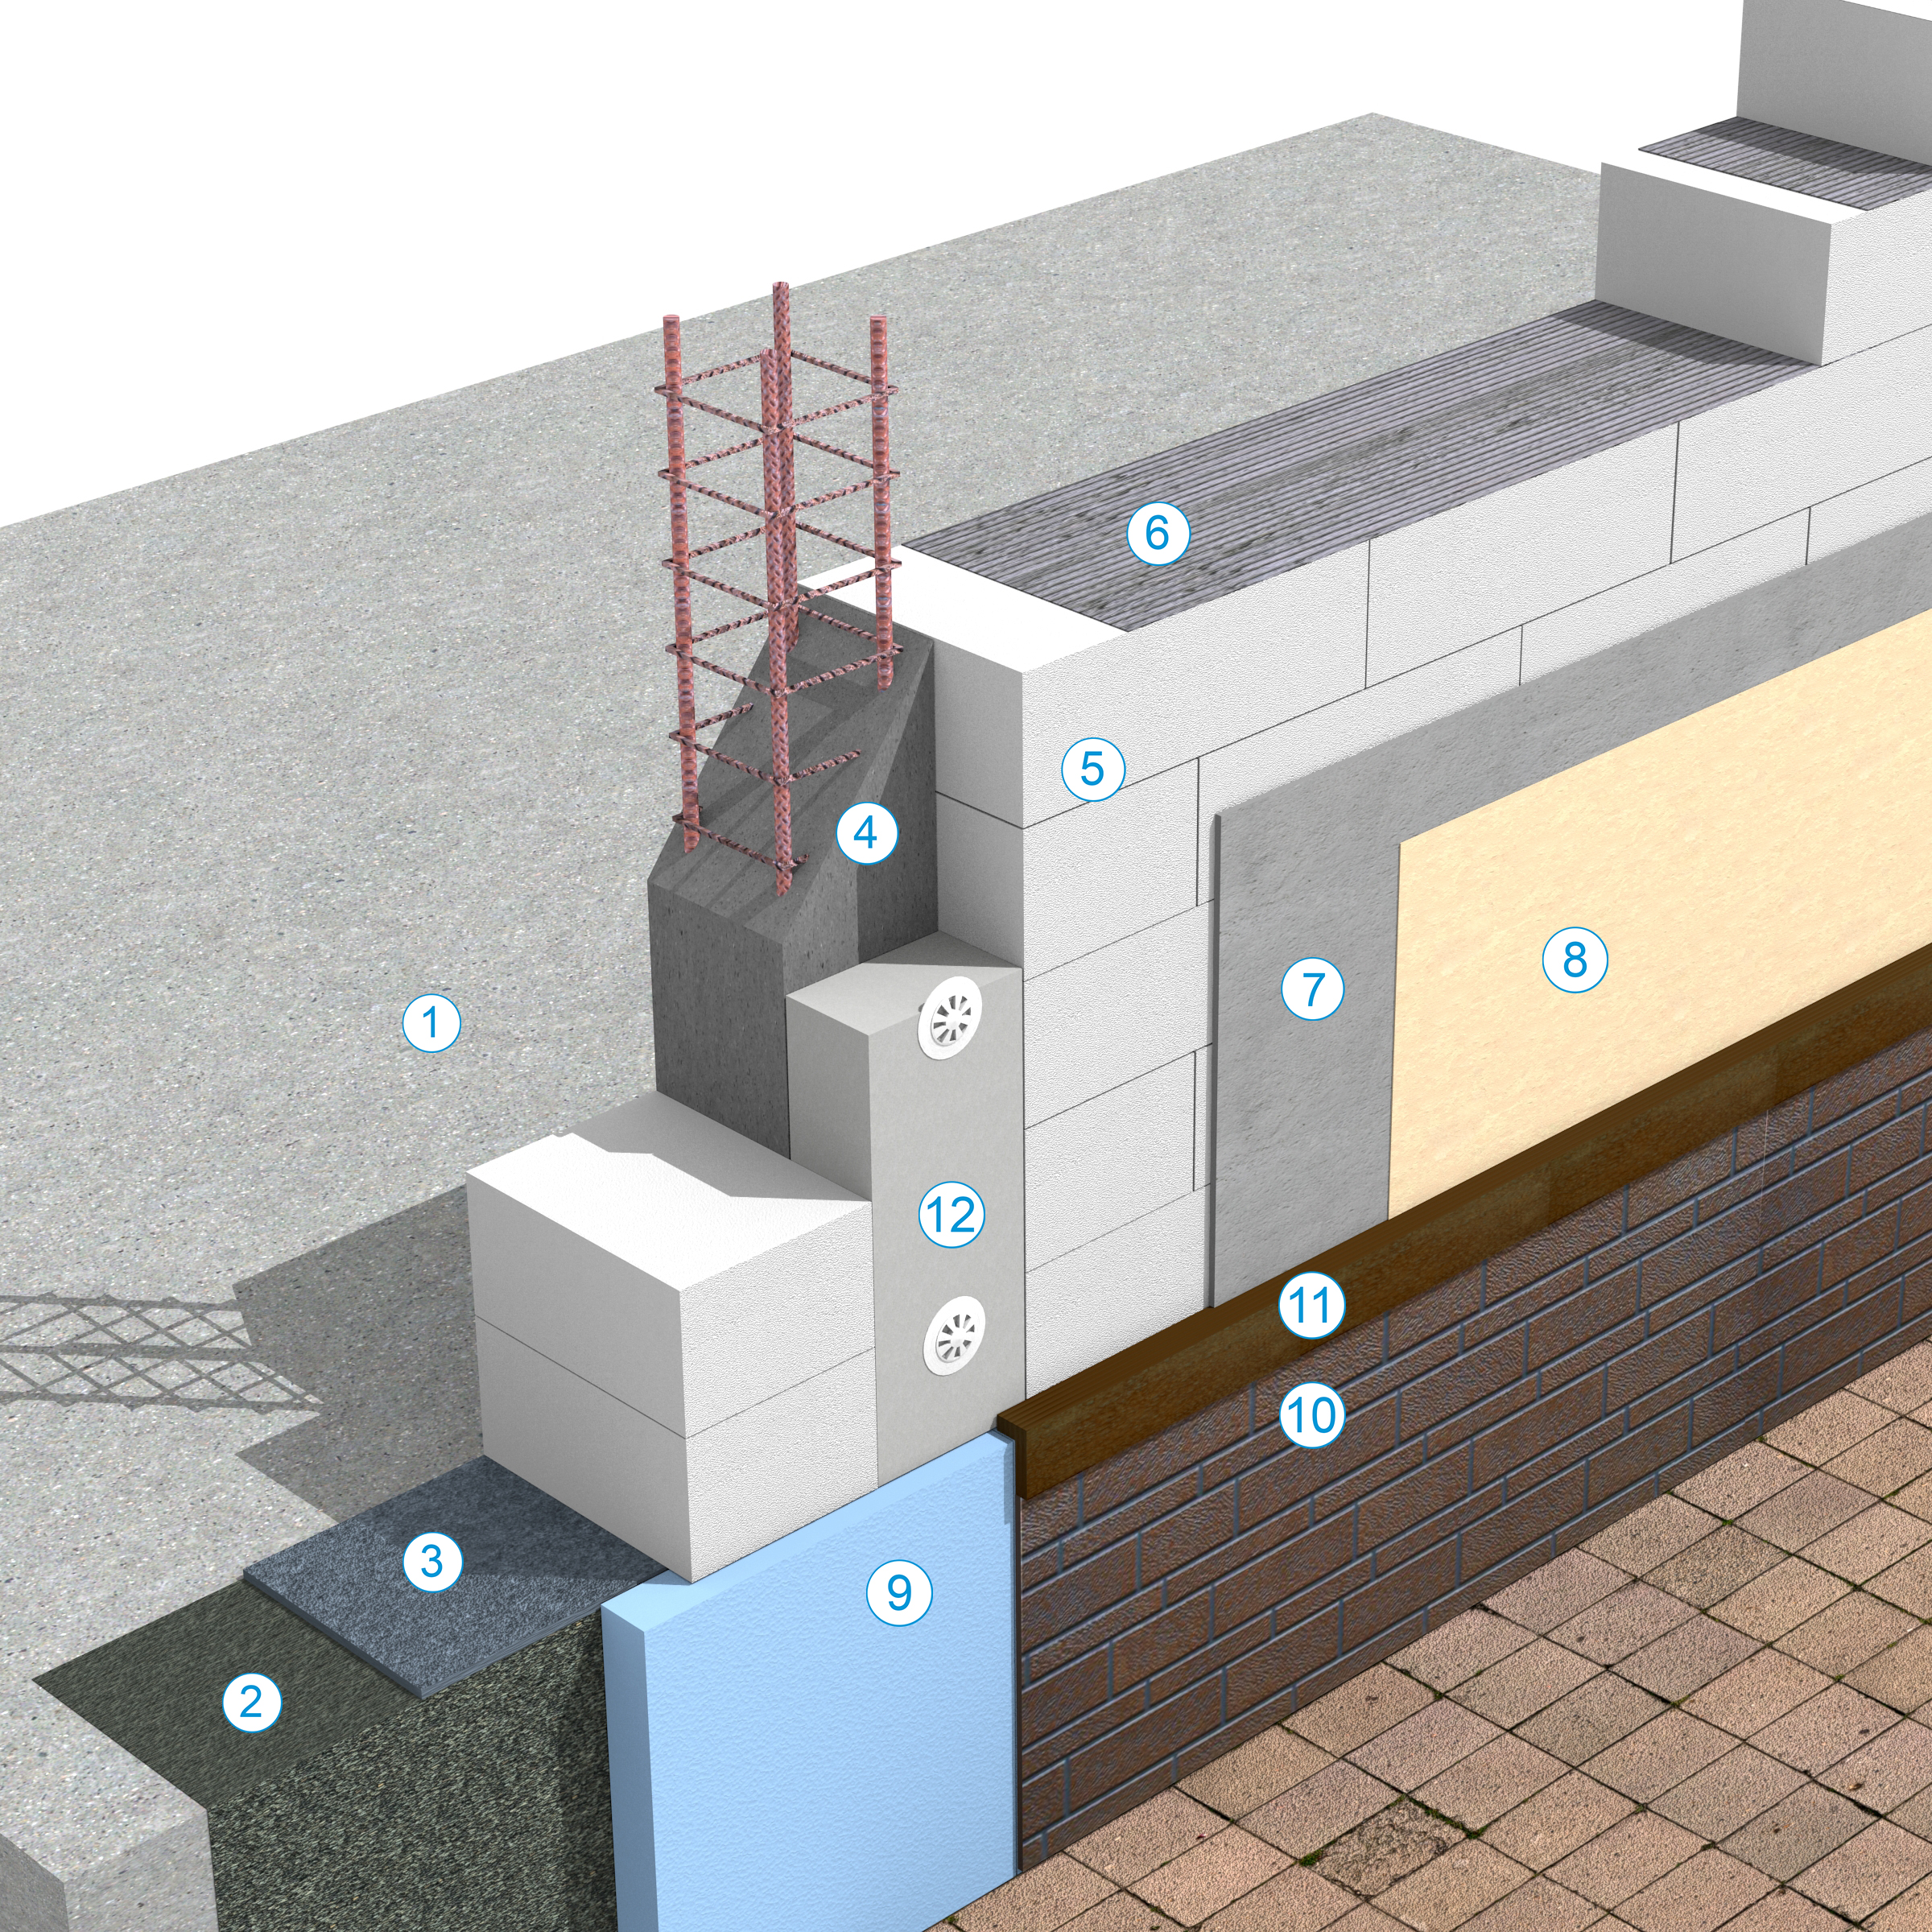 Detaliu de soclu - Sistem de zidarie confinata din BCA Macon pentru constructii rezidentiale publice si